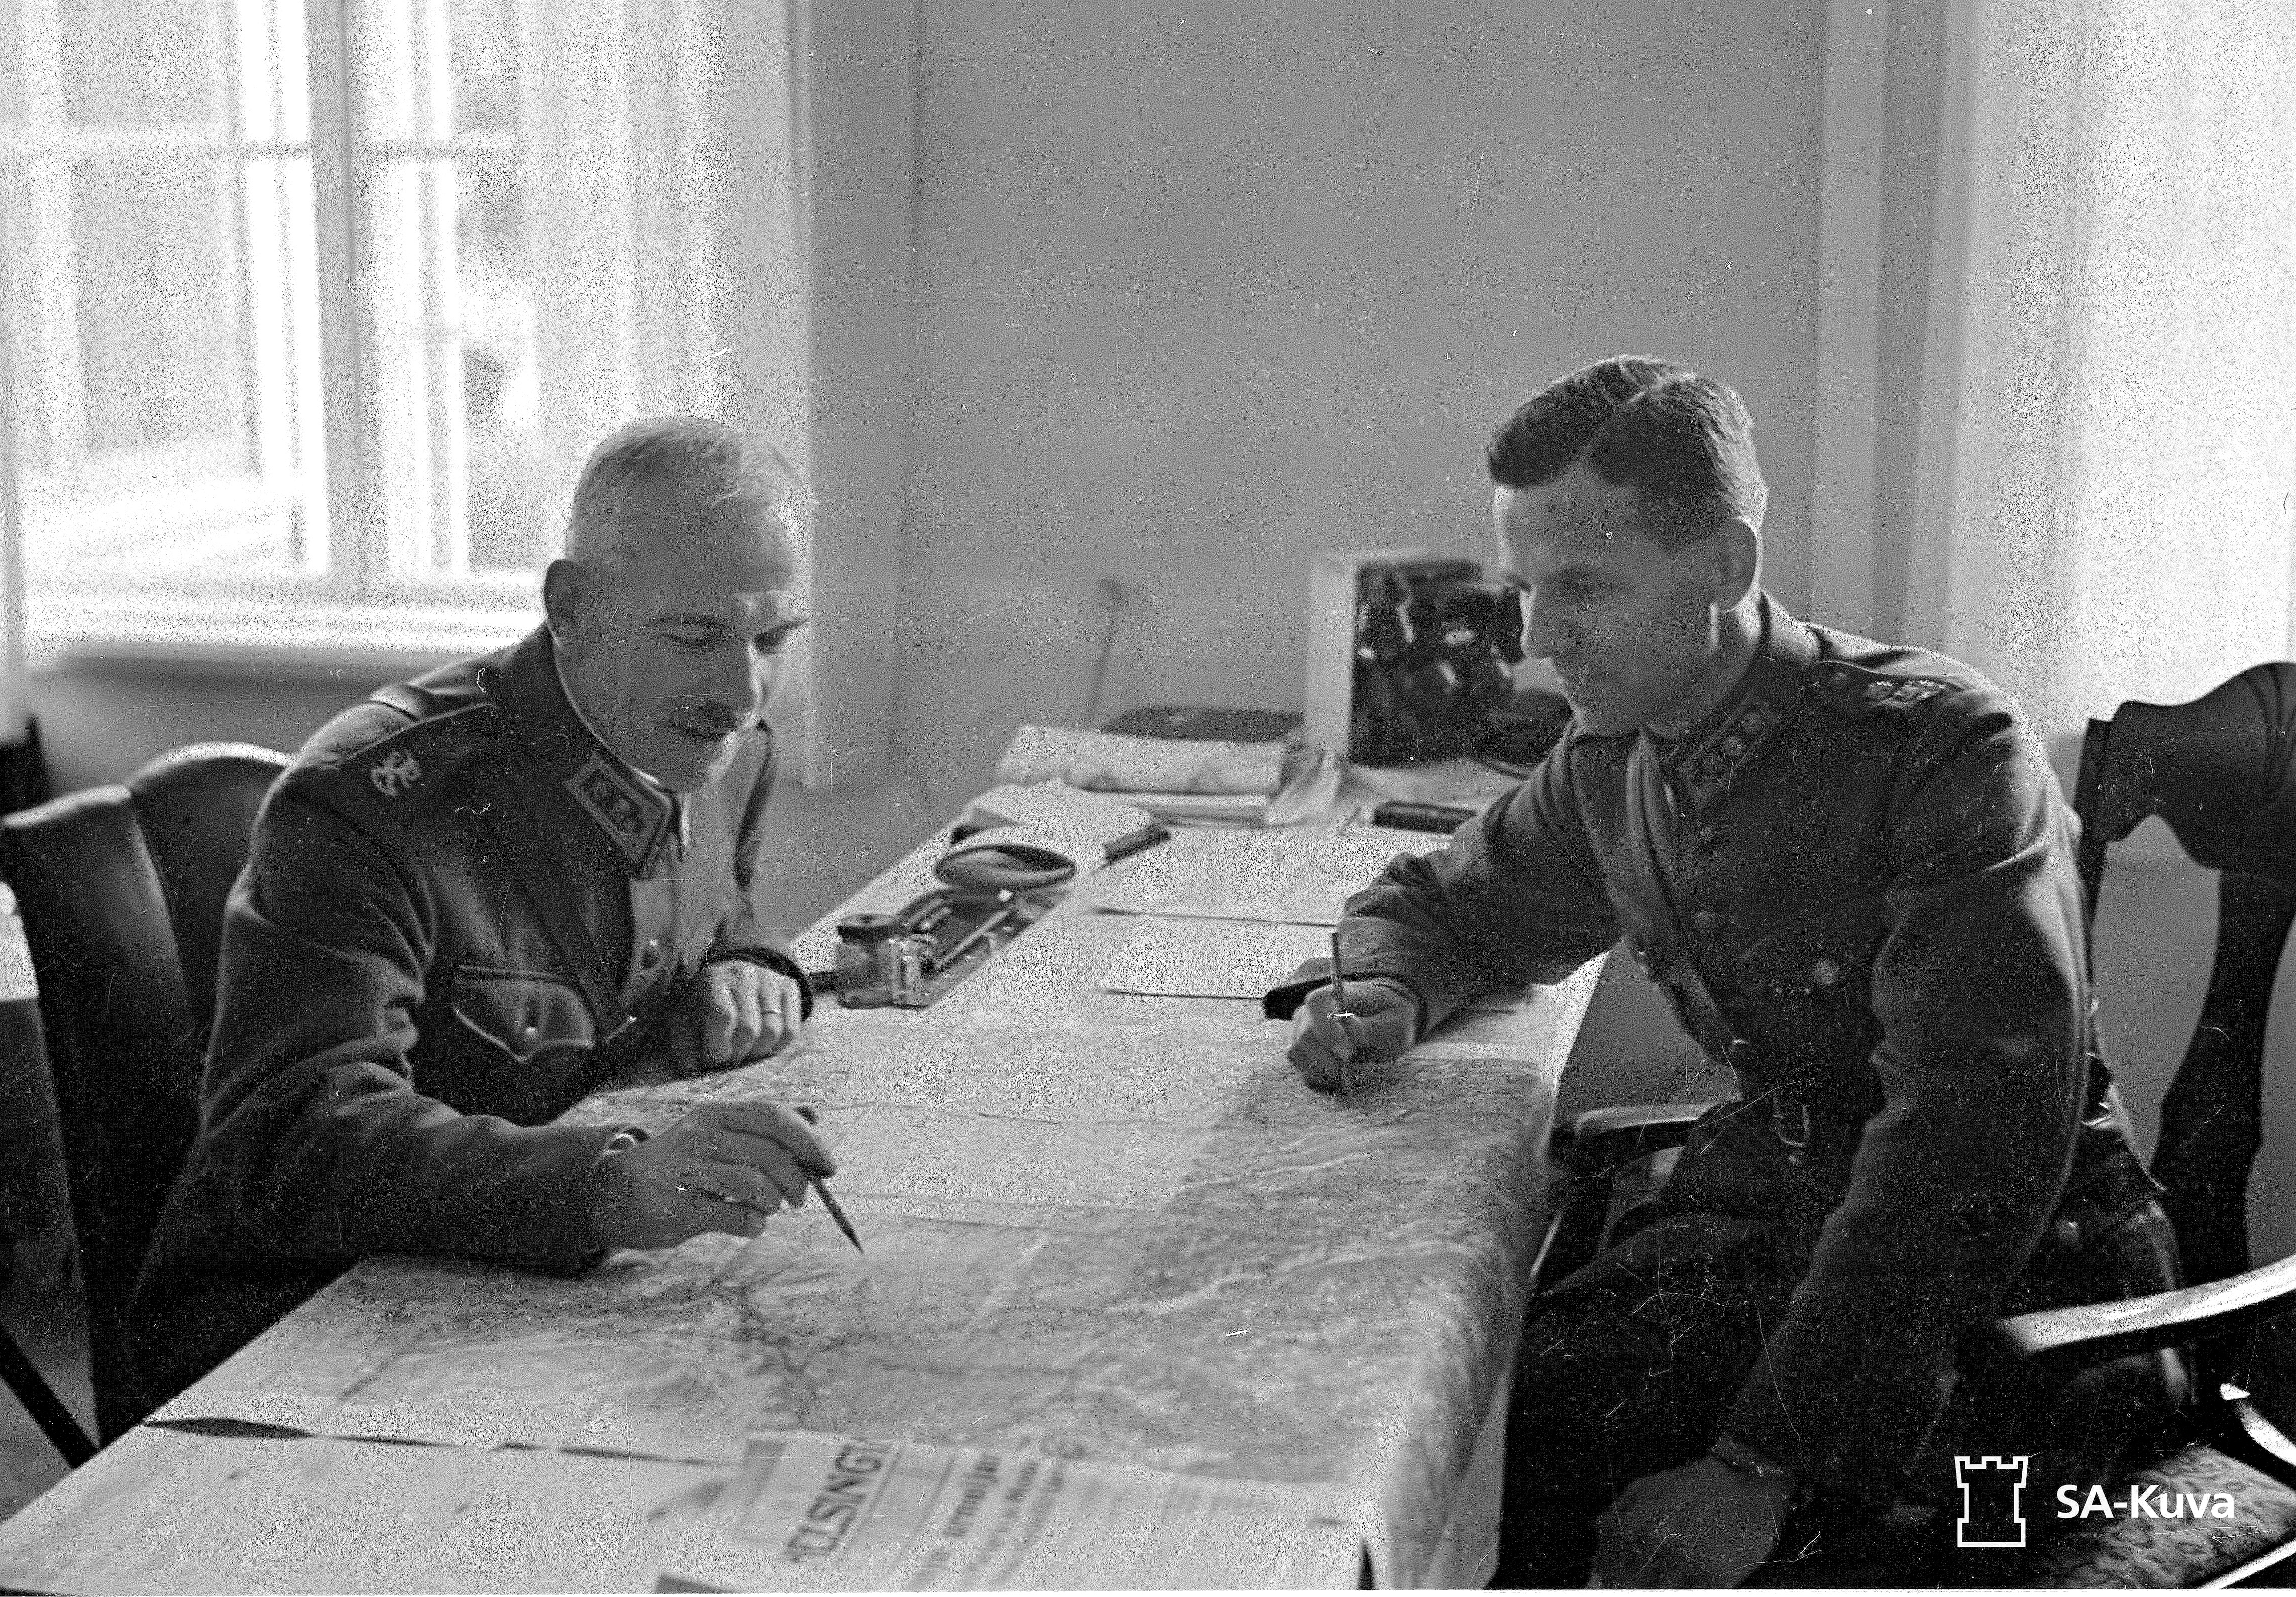 Kenraaliluutnantti Oesch ja eversti Vallo Nihtilä karttapöydän ääressä jatkosodan aikaan. Oesch pitelee kynää kädessään, Nihtilä katsoo karttaan päin. 